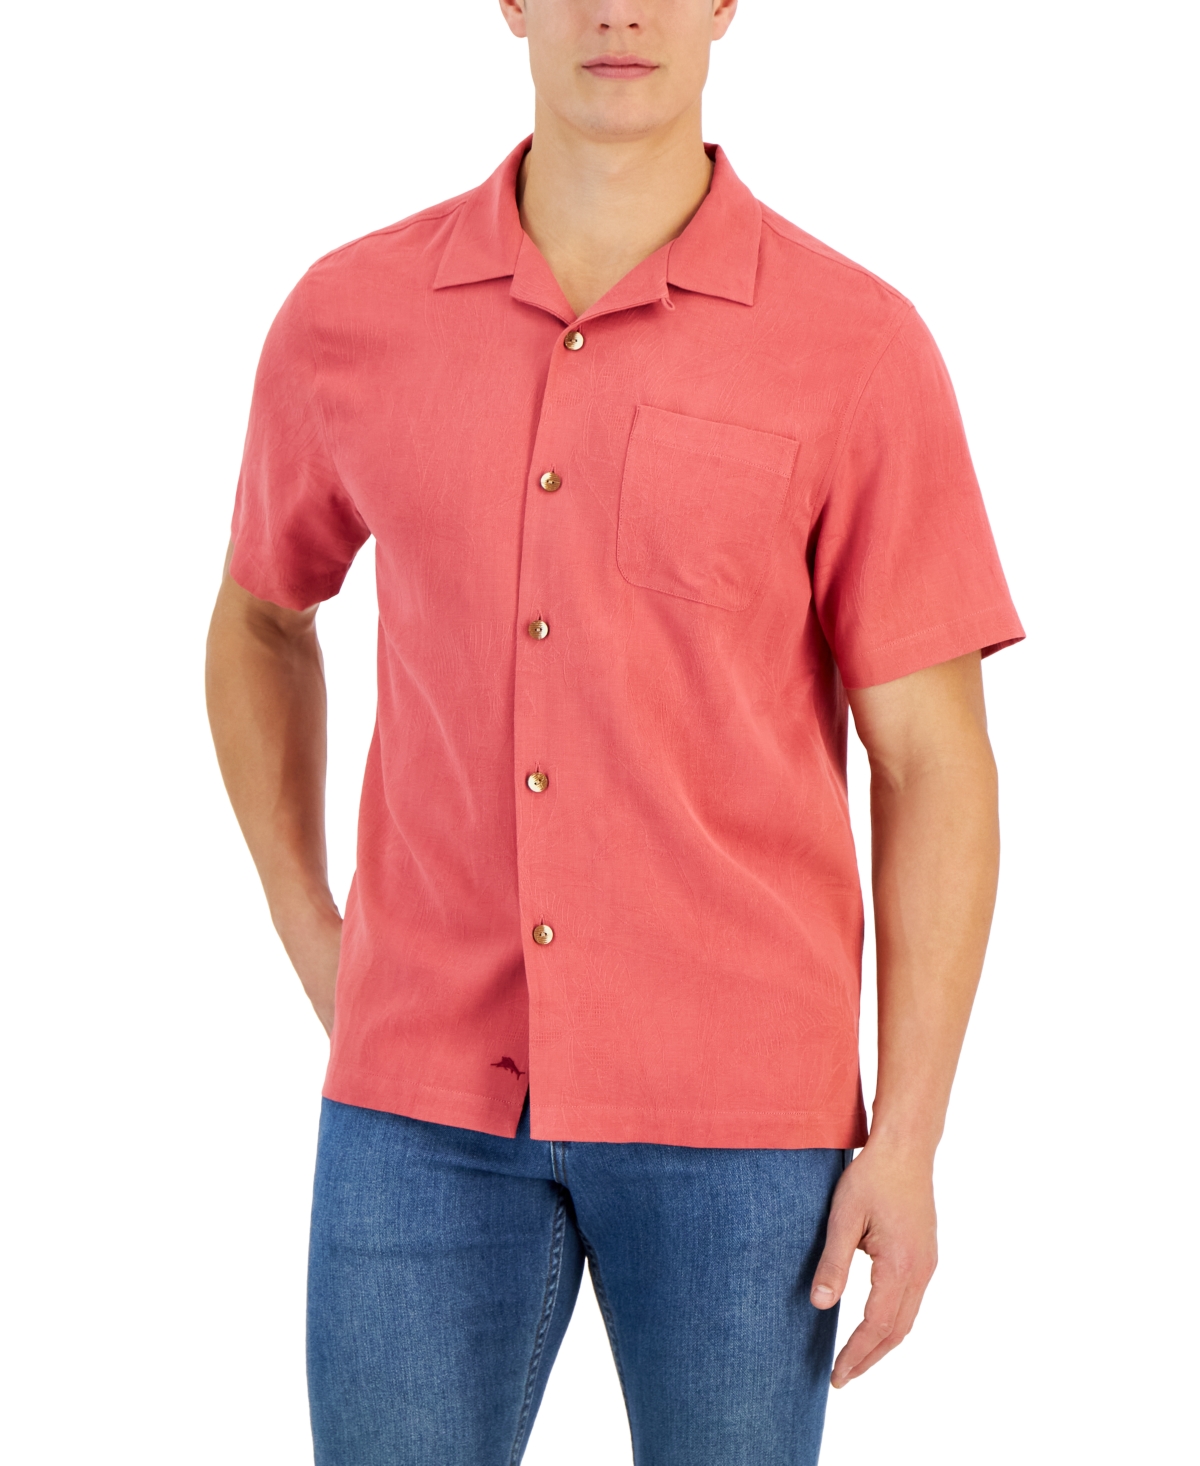 Atlanta Braves Tommy Bahama Tropical Horizons Button-Up Shirt